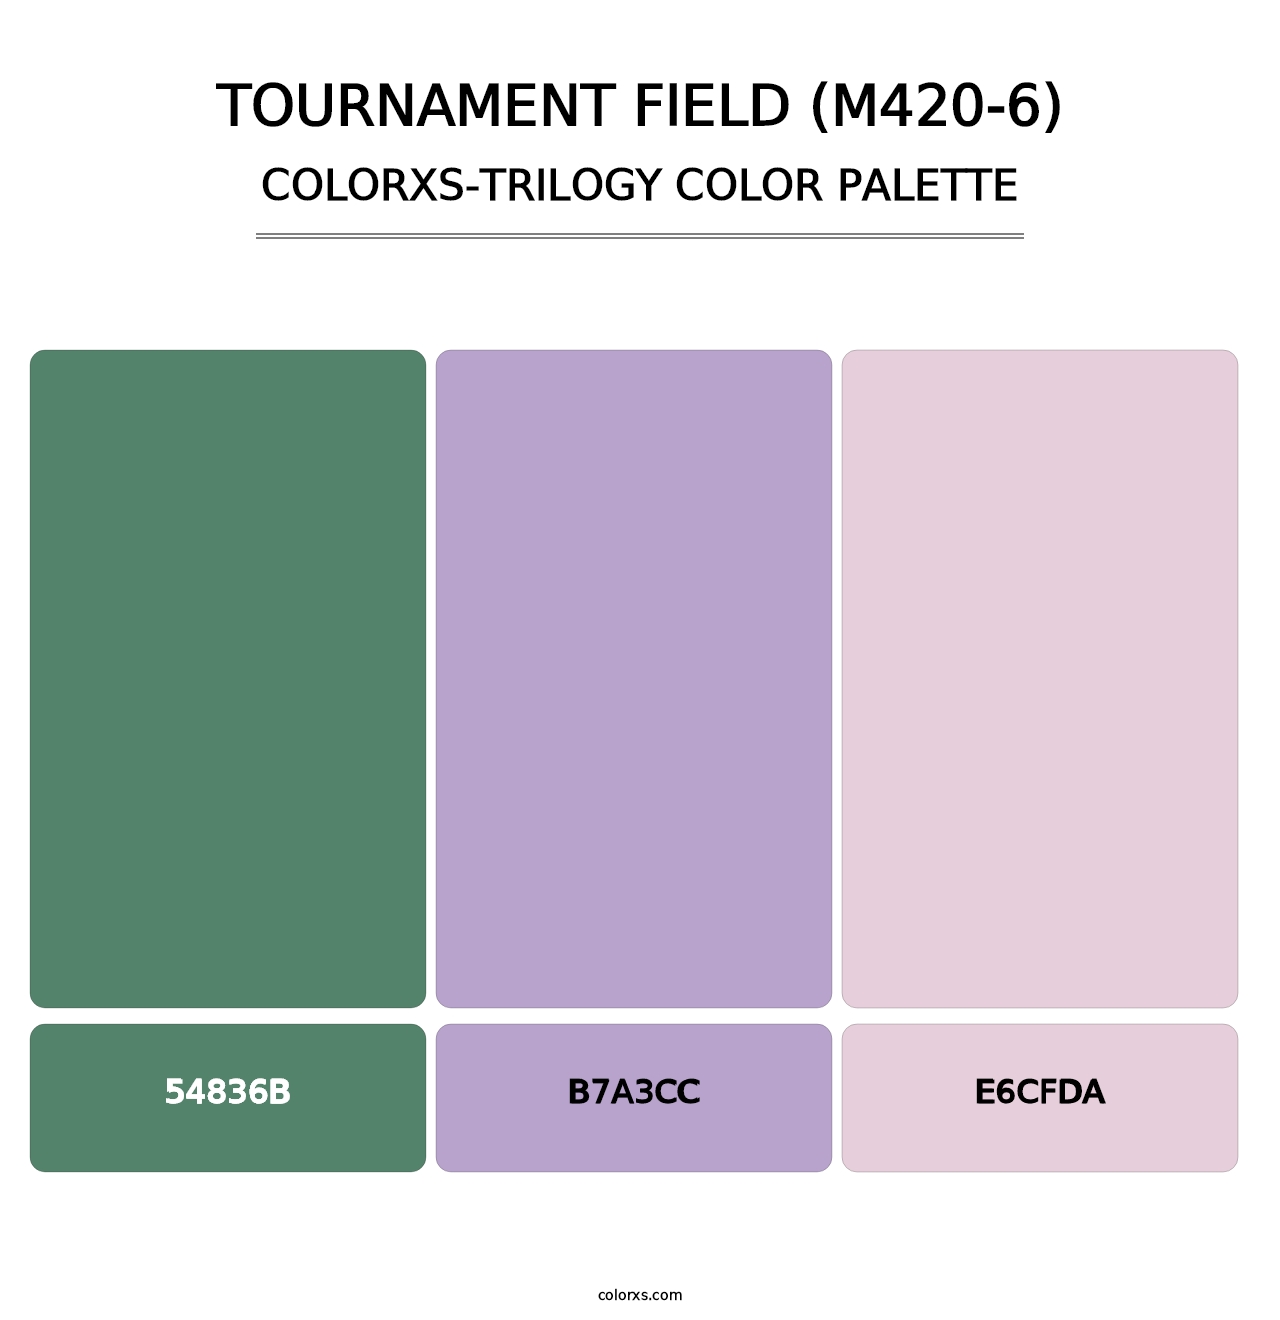 Tournament Field (M420-6) - Colorxs Trilogy Palette